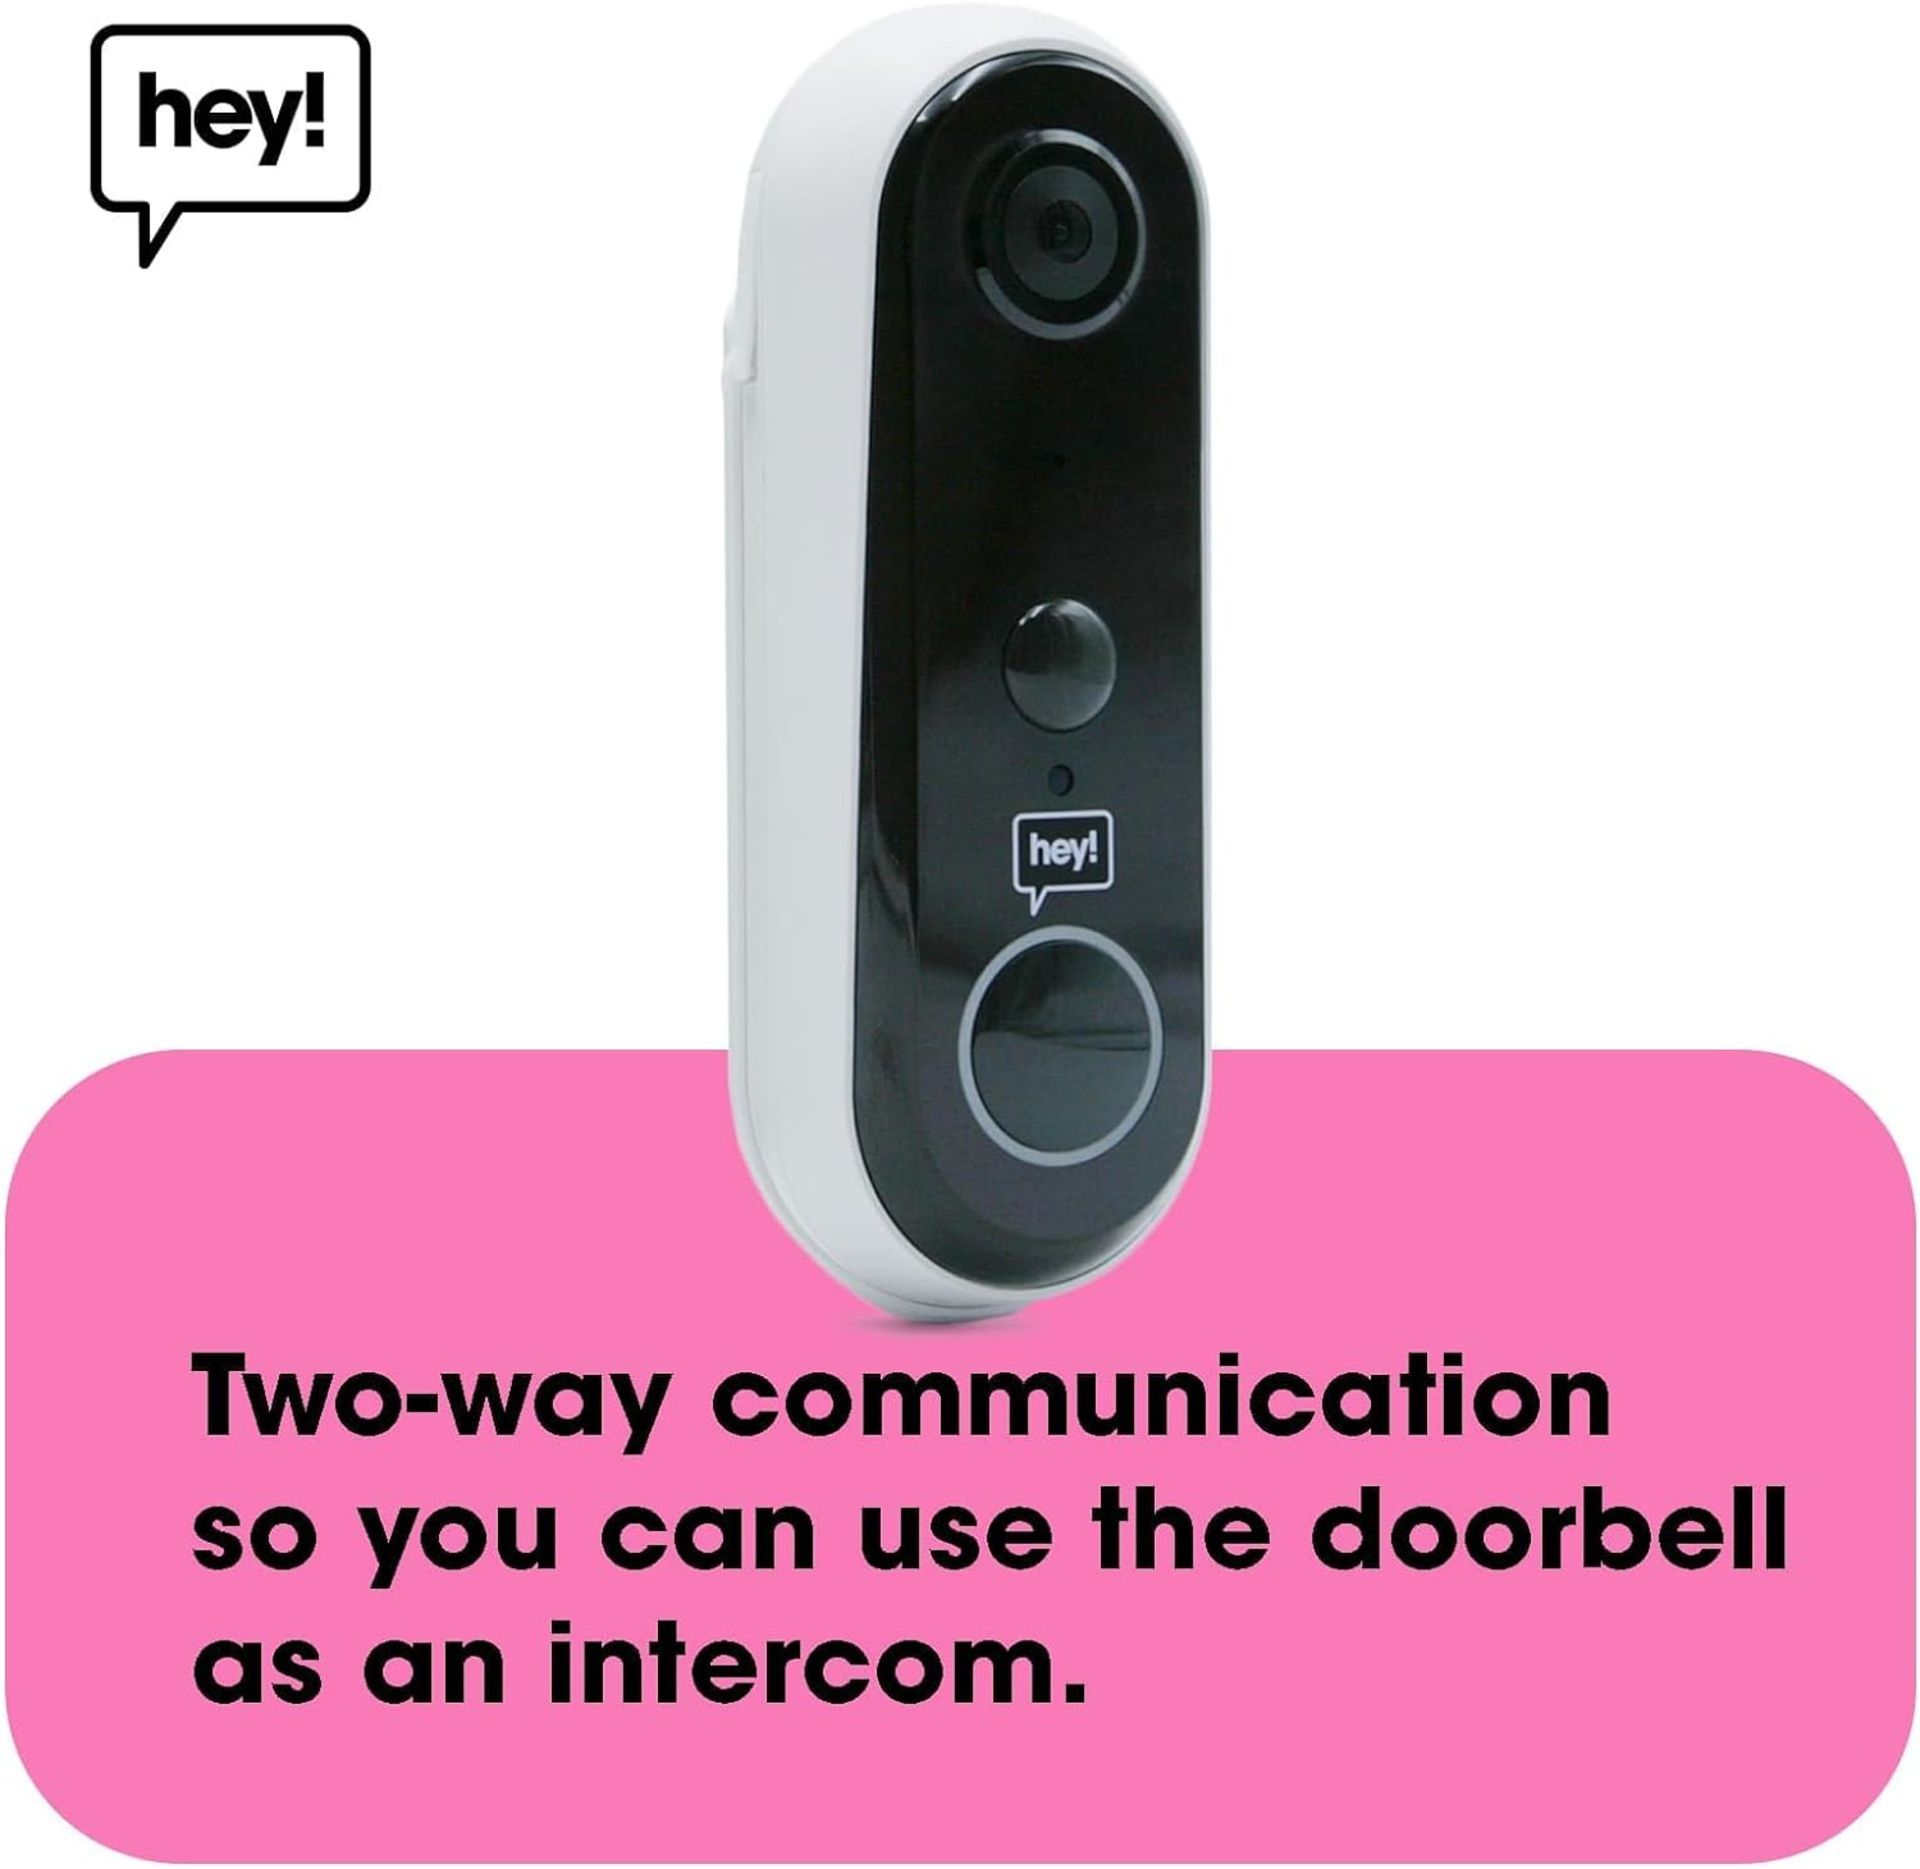 NEW & BOXED HEY! SMART Wireless Video Doorbell. RRP £79.99 EACH. Wifi Doorbell Security Camera - Image 5 of 6